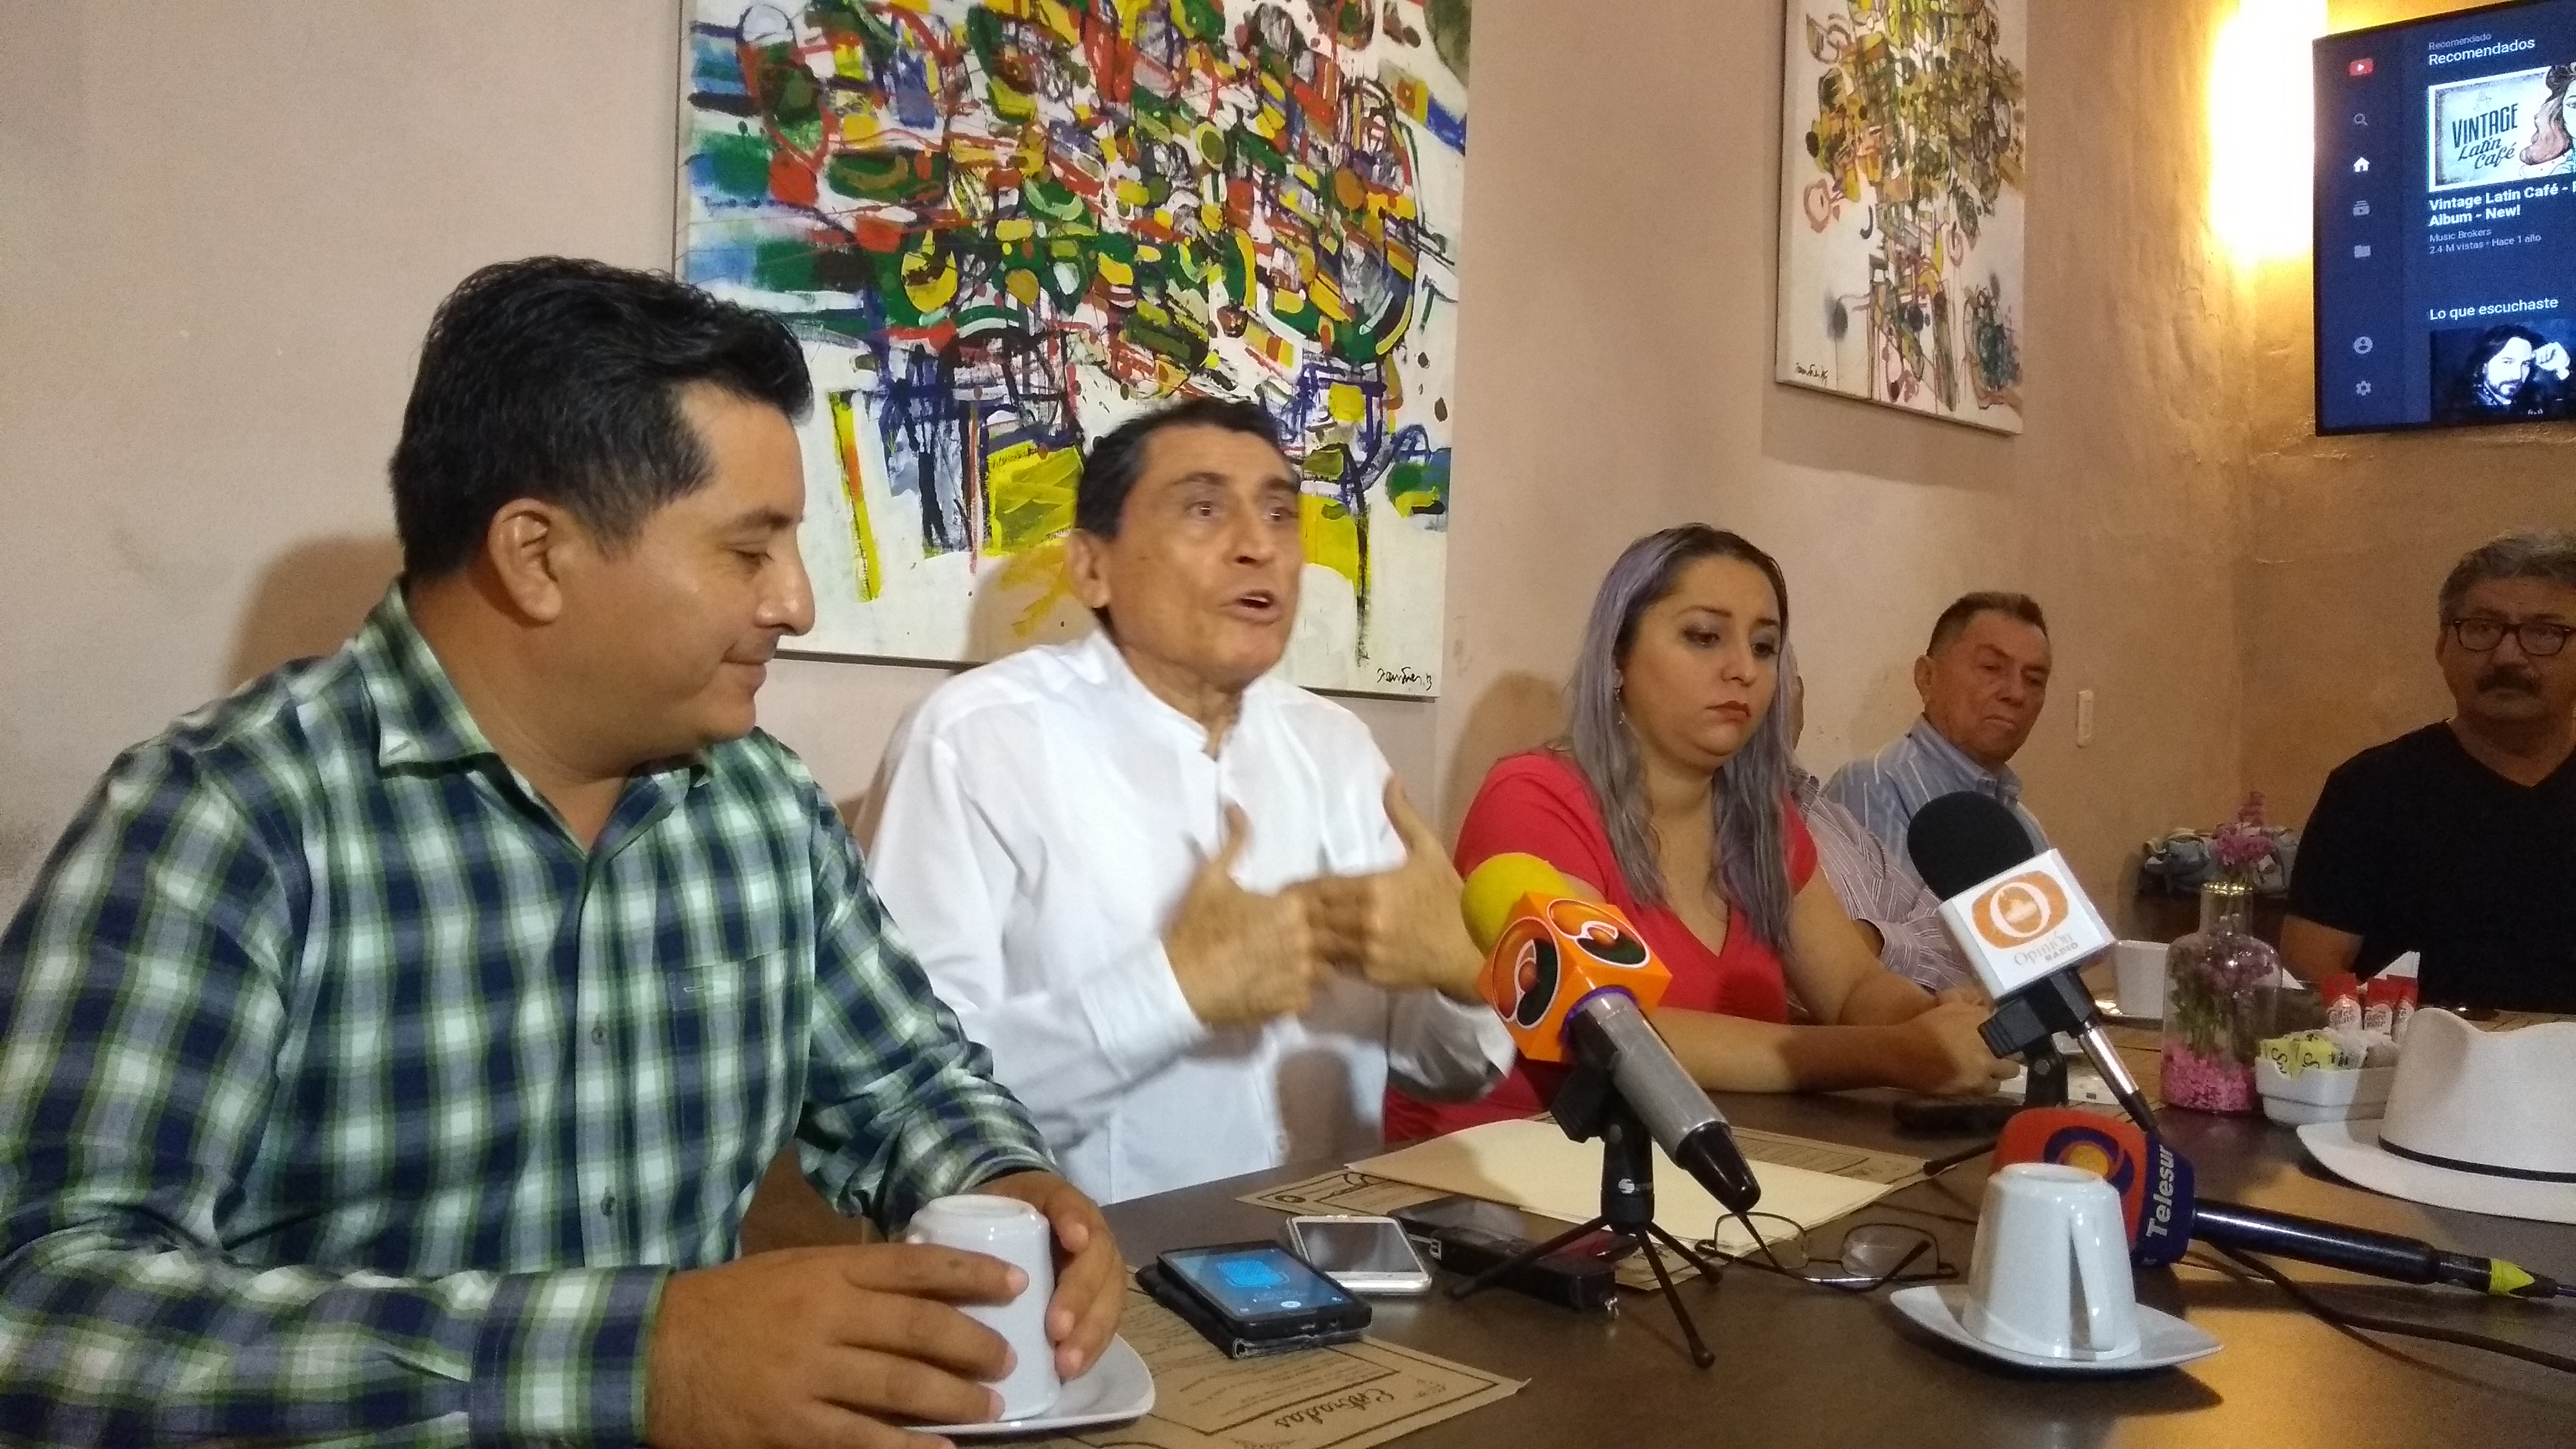 Desiste aspirante independiente yucateco; se queja de farsa